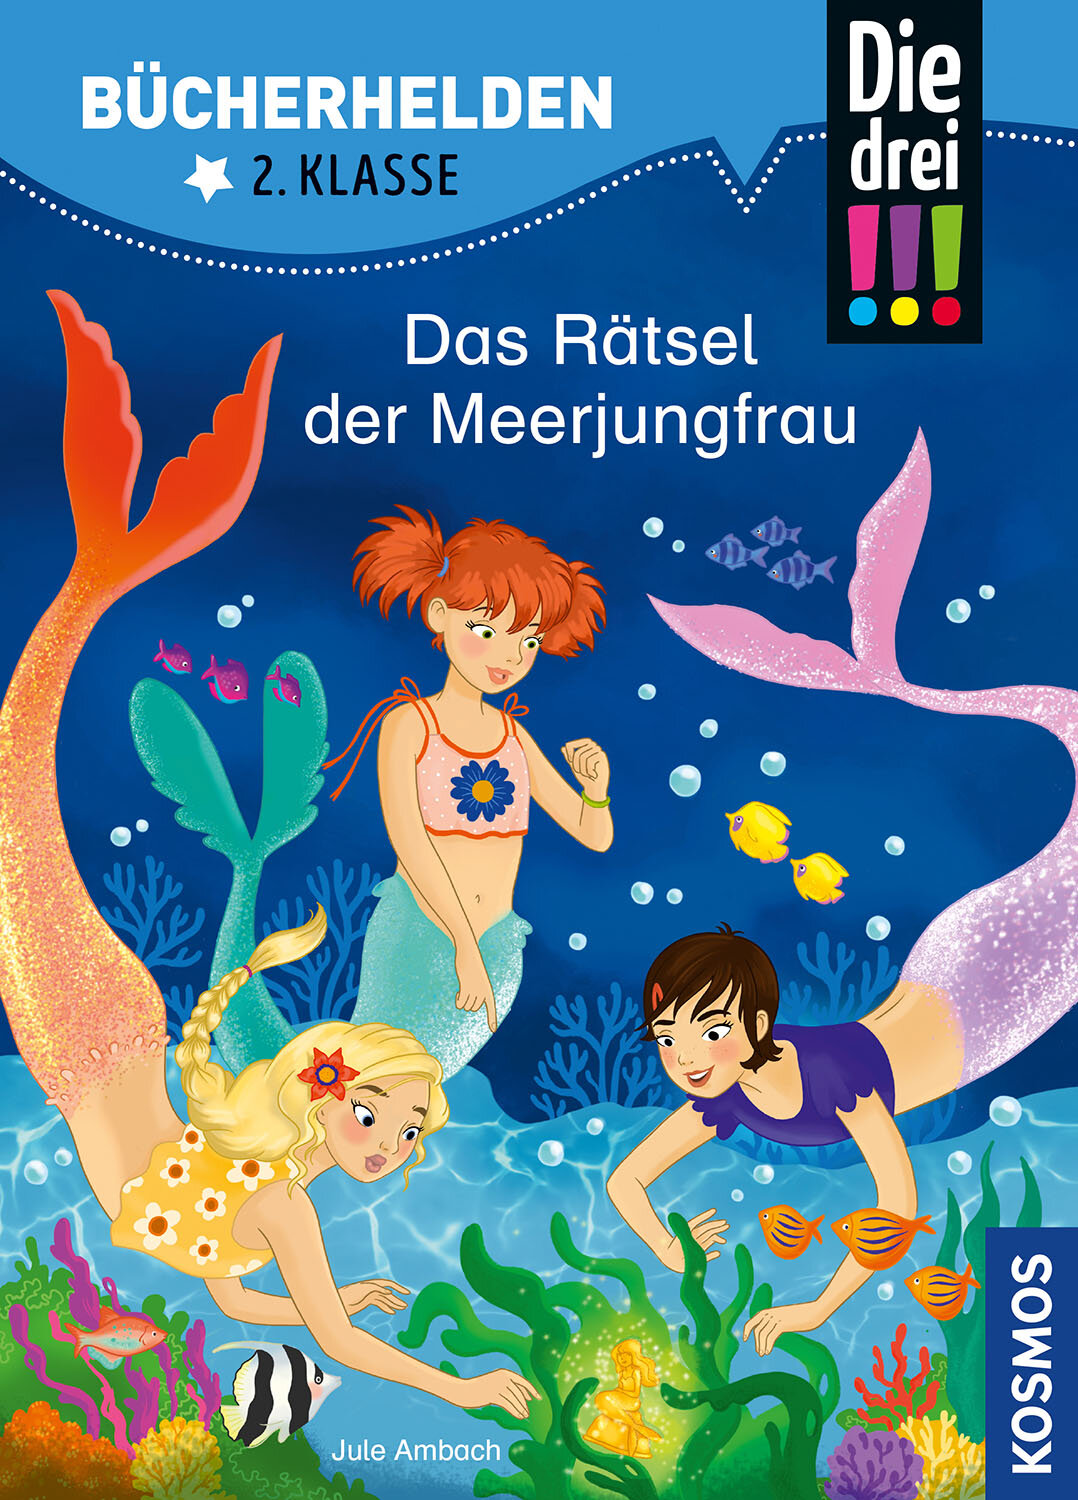 Das Rätsel der Meerjungfrau Die drei Ausrufezeichen Bücherhelden 2. Klasse